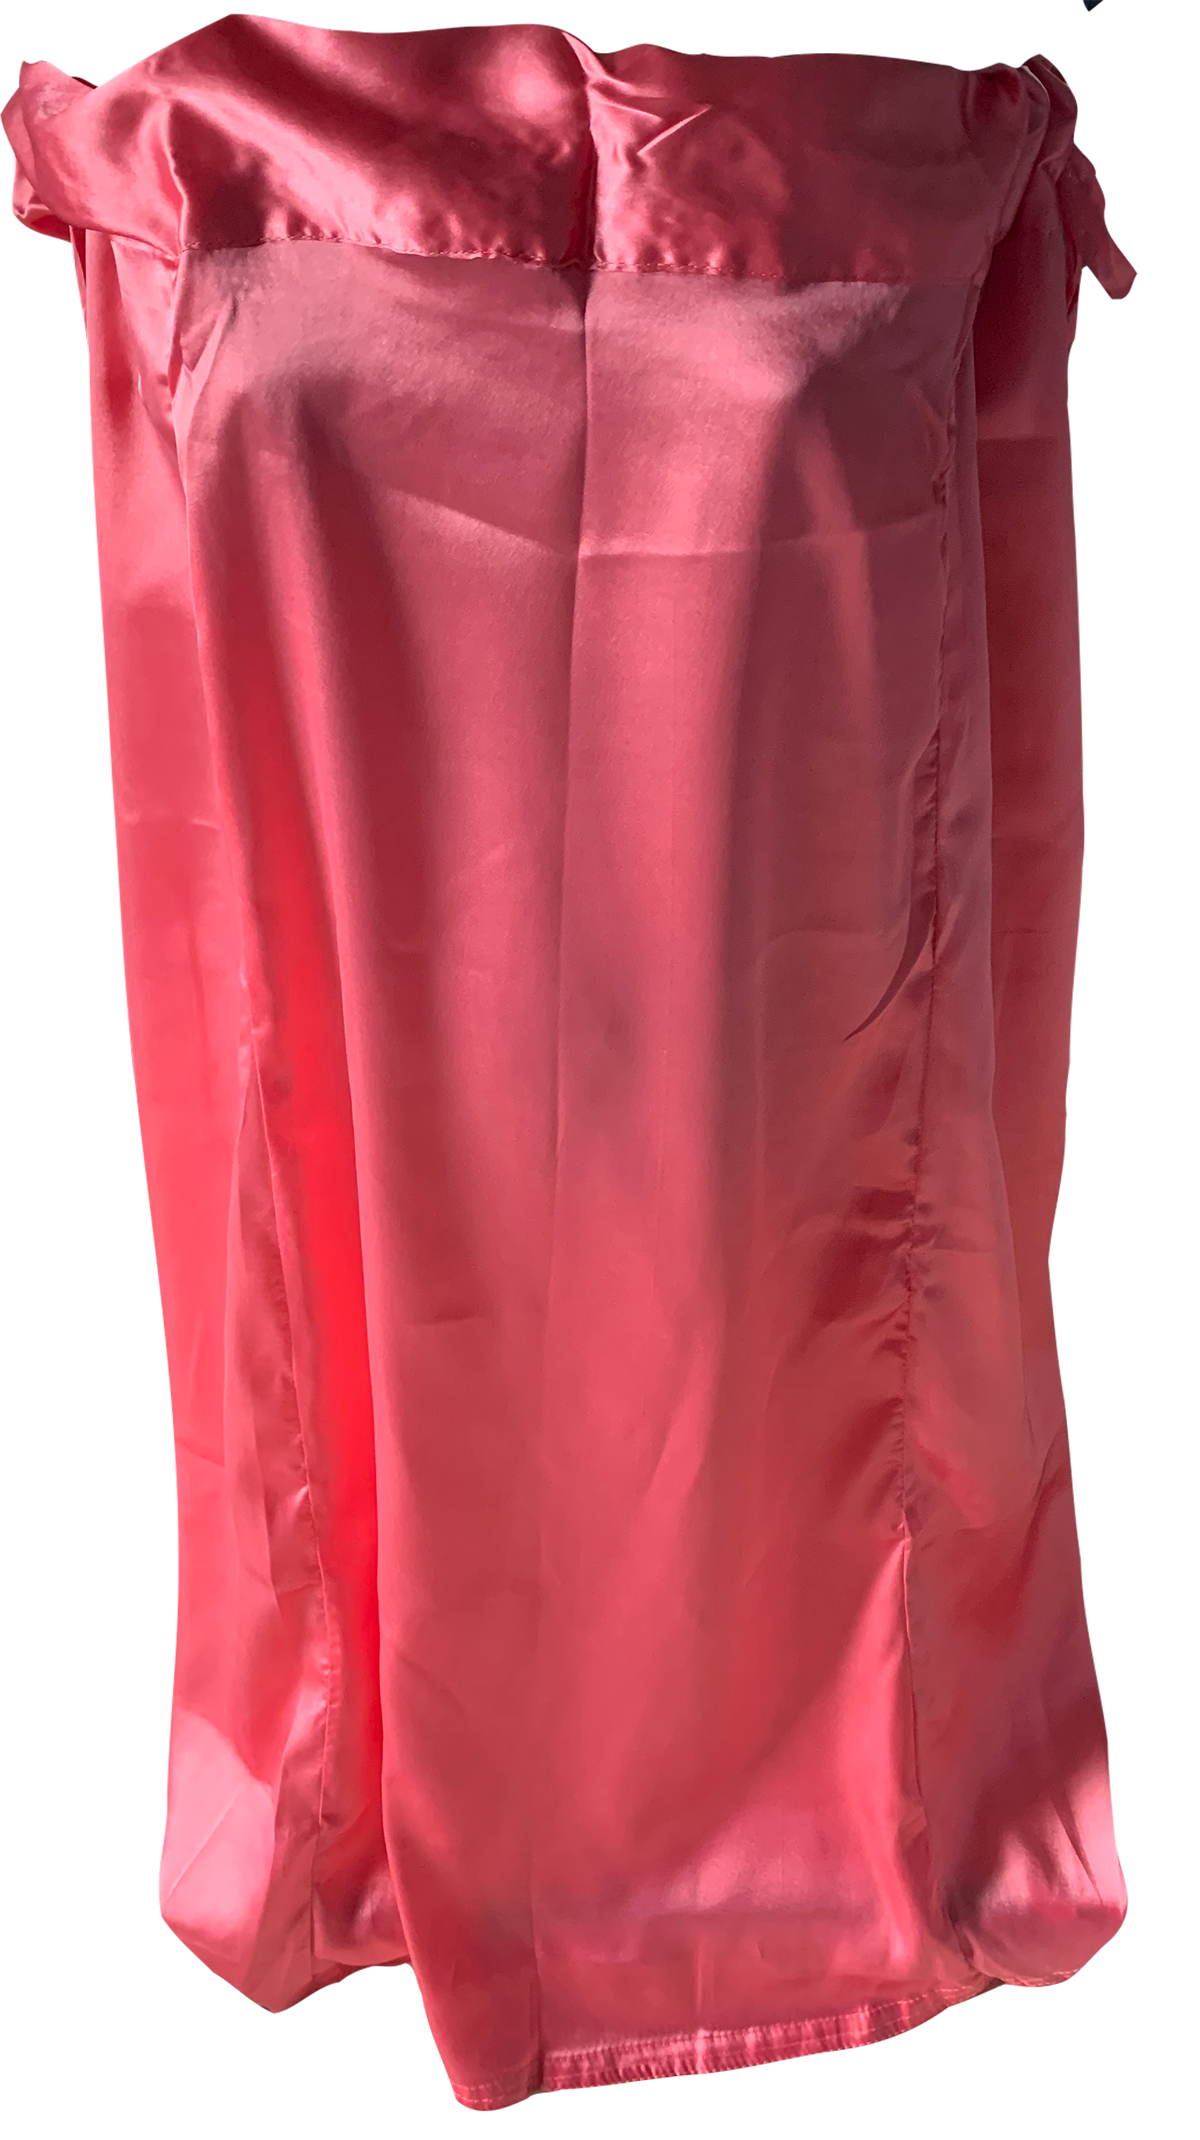 Rose Pink Satin Indian Saree Sari Petticoat Underskirt